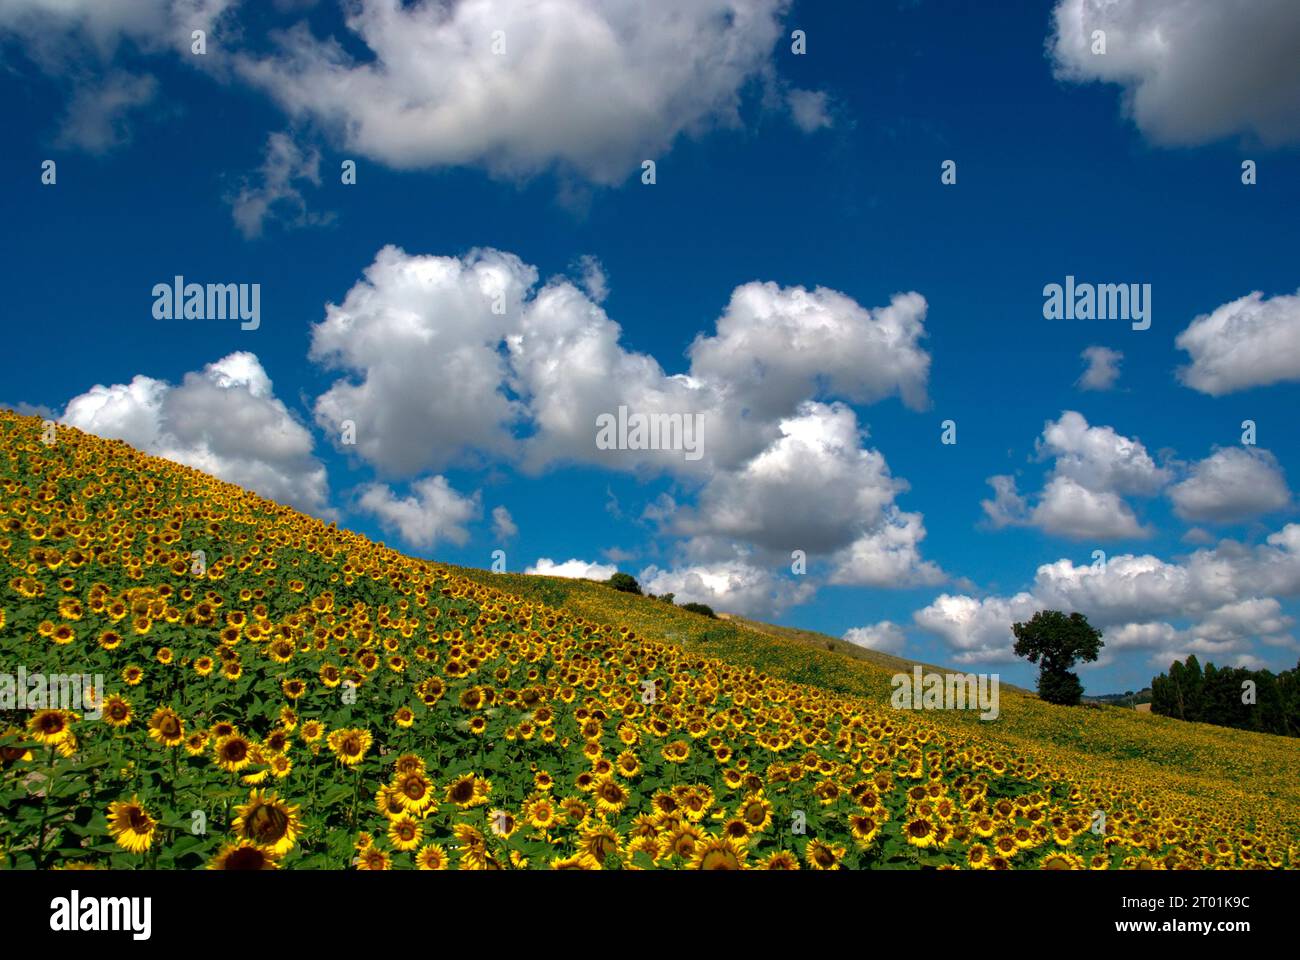 girasoli in un campo di collina contro un cielo con nuvole e una quercia solitaria Banque D'Images